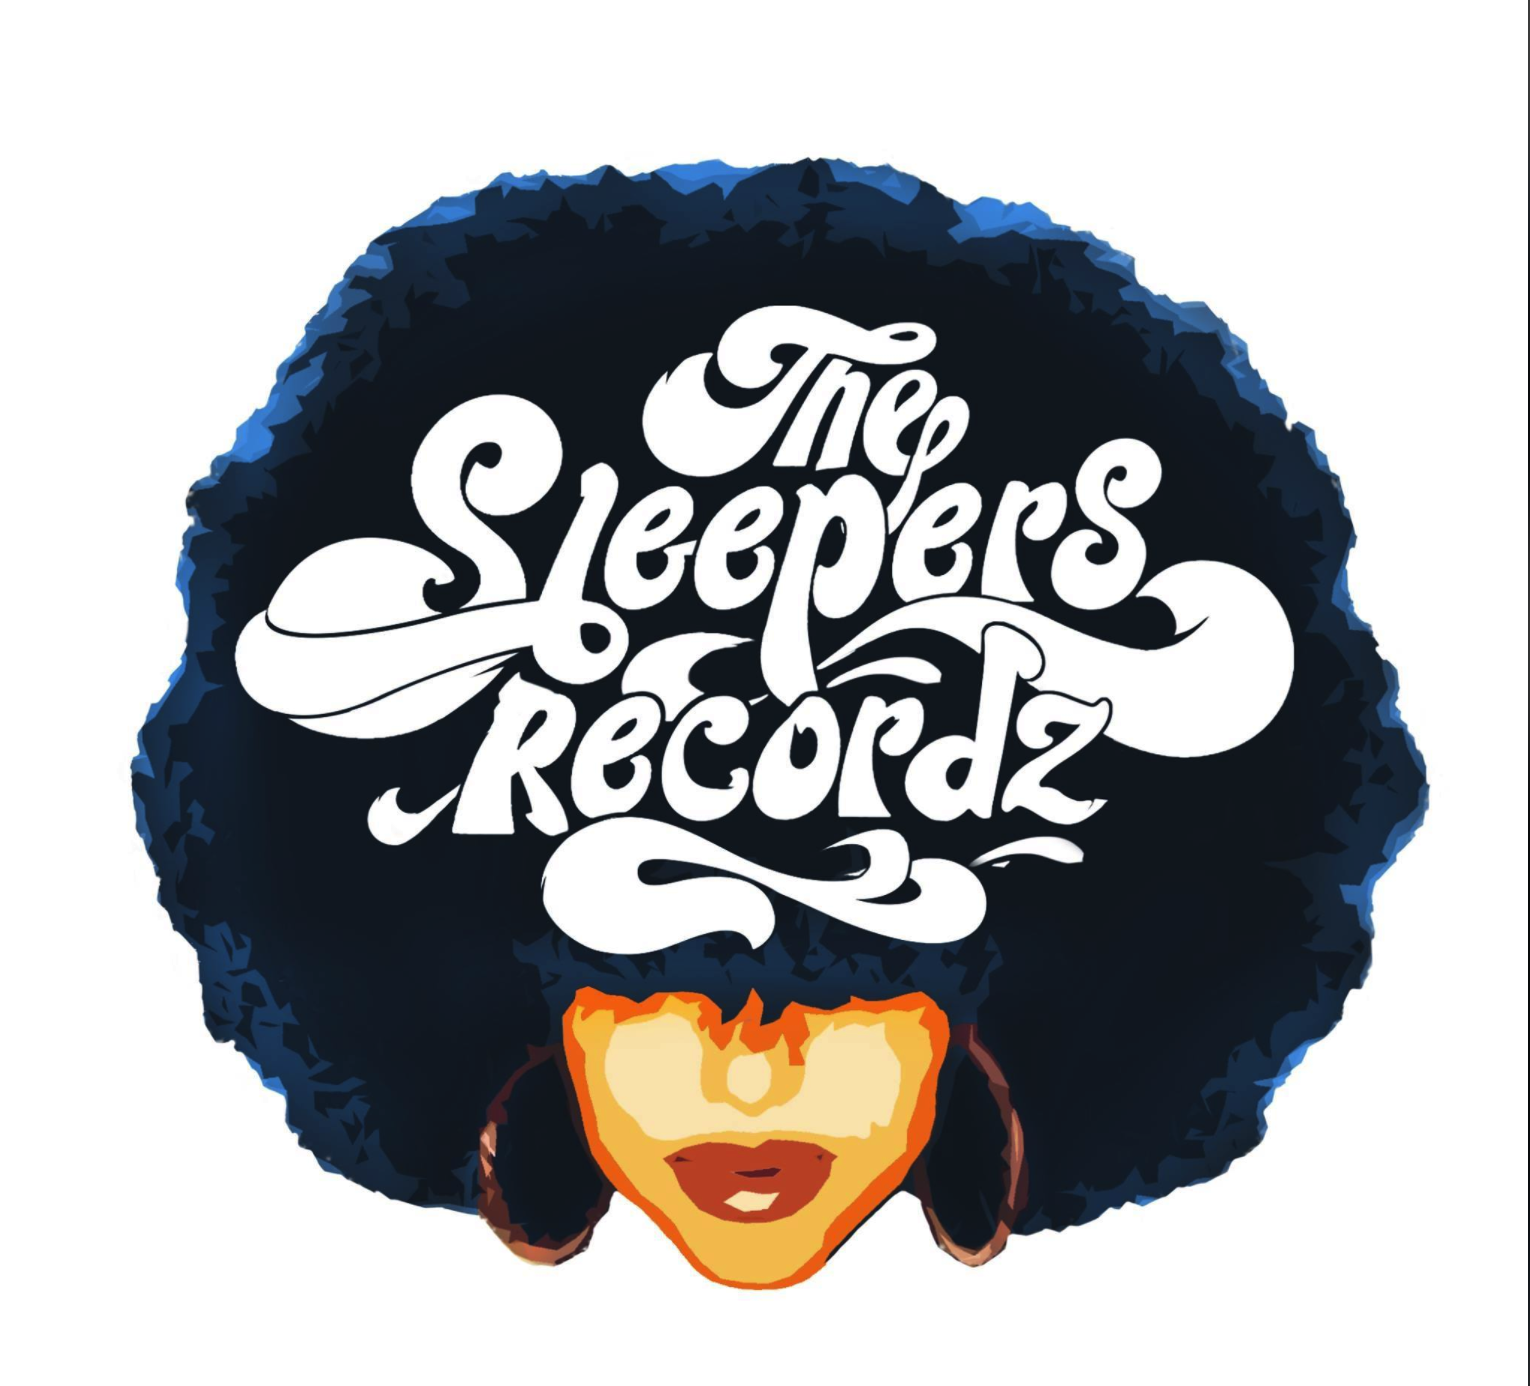 The Sleepers Recordz